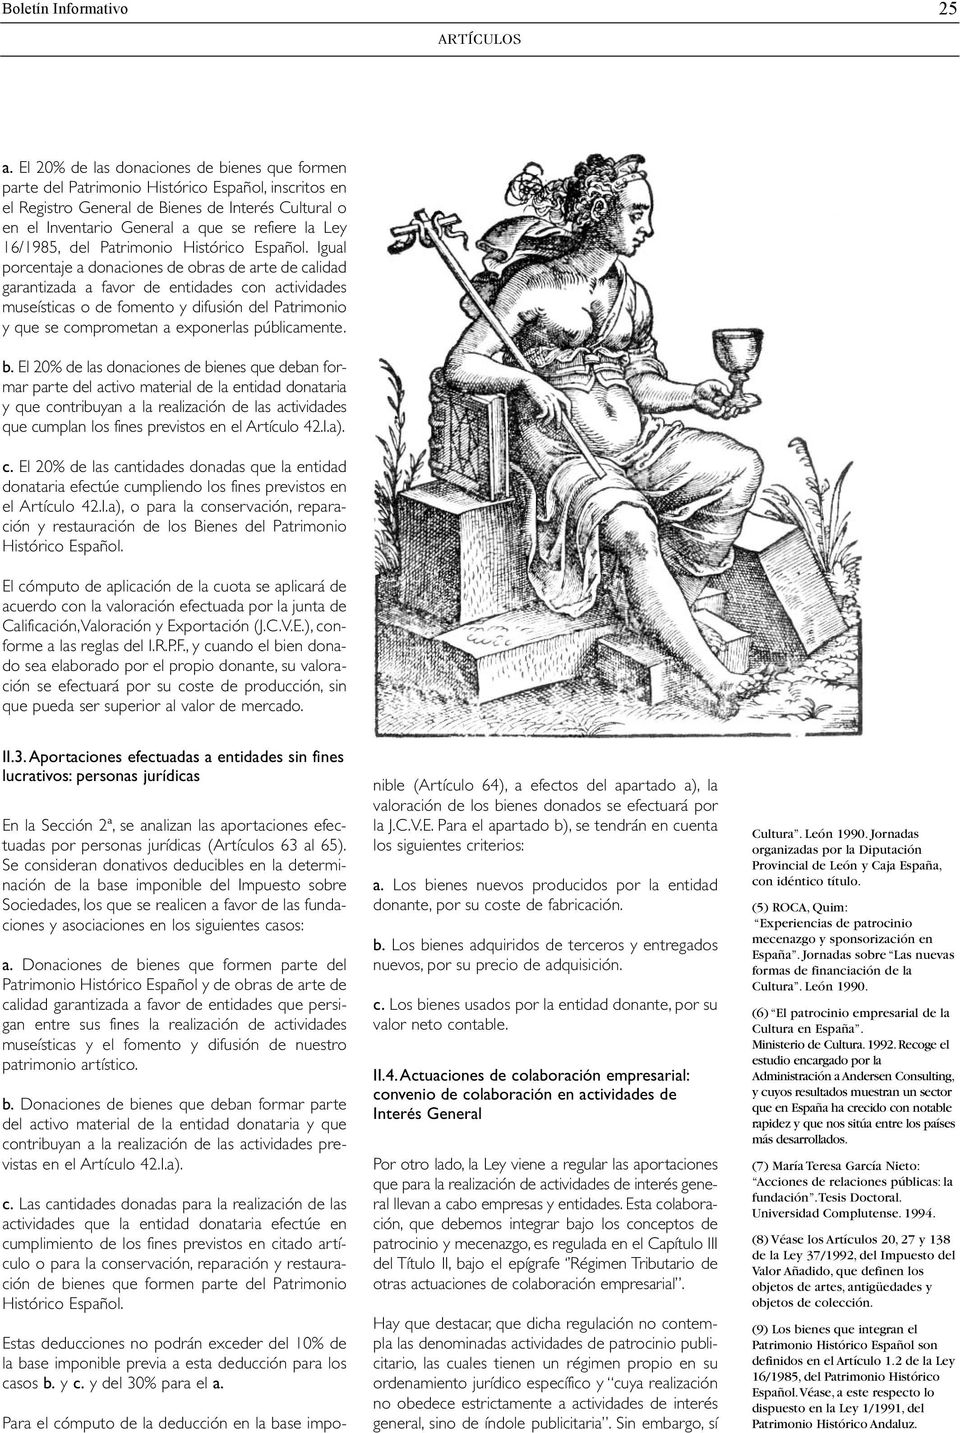 16/1985, del Patrimonio Histórico Español.